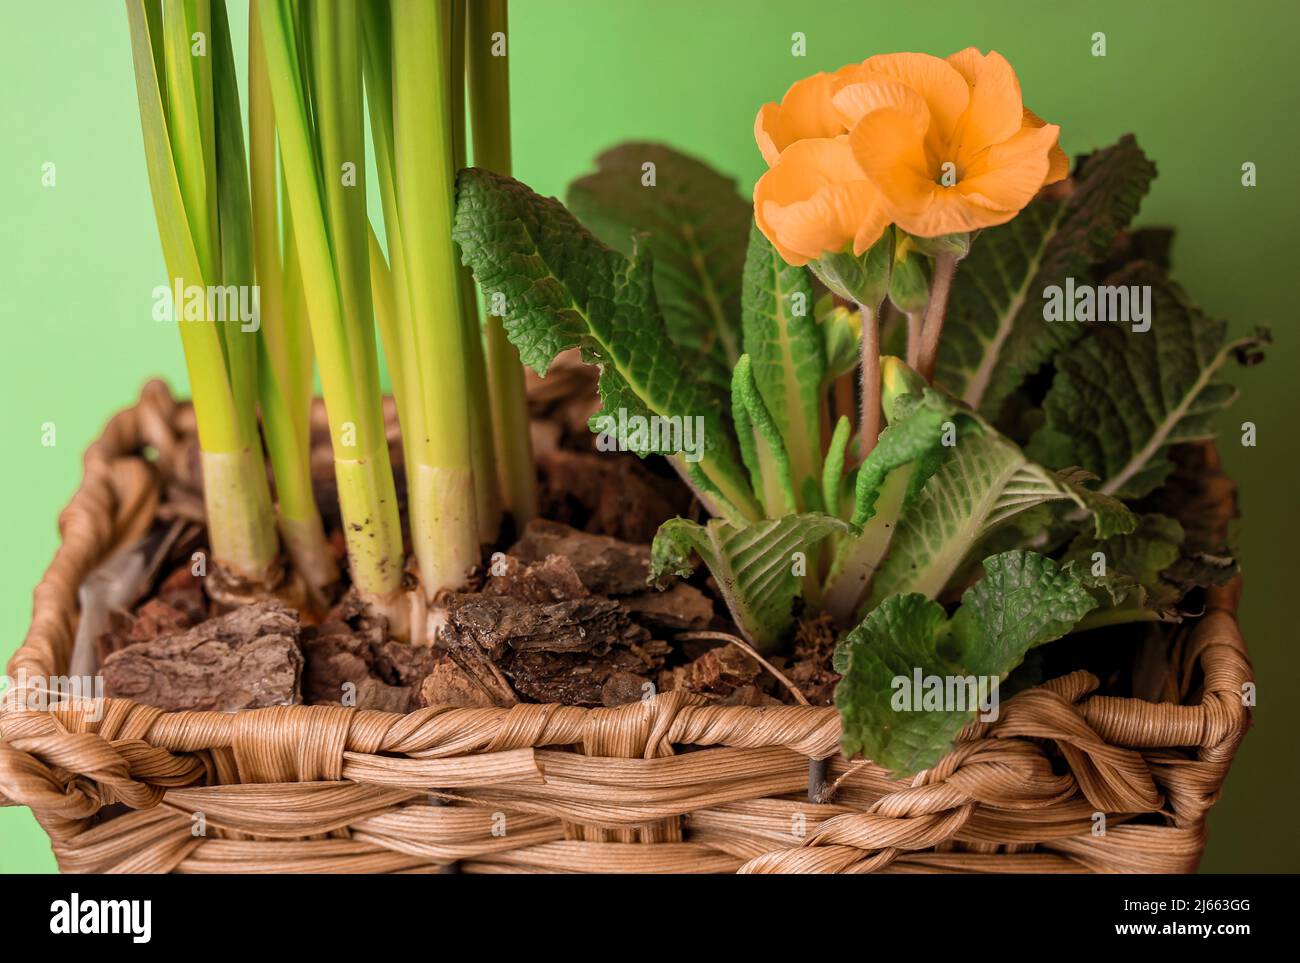 Cesta con plantas bulbosas de primavera, capullos de flores amarillas  Primula vulgaris creciendo en suelo de corteza en una cesta decorativa de  madera de mimbre sobre fondo verde. P Fotografía de stock -